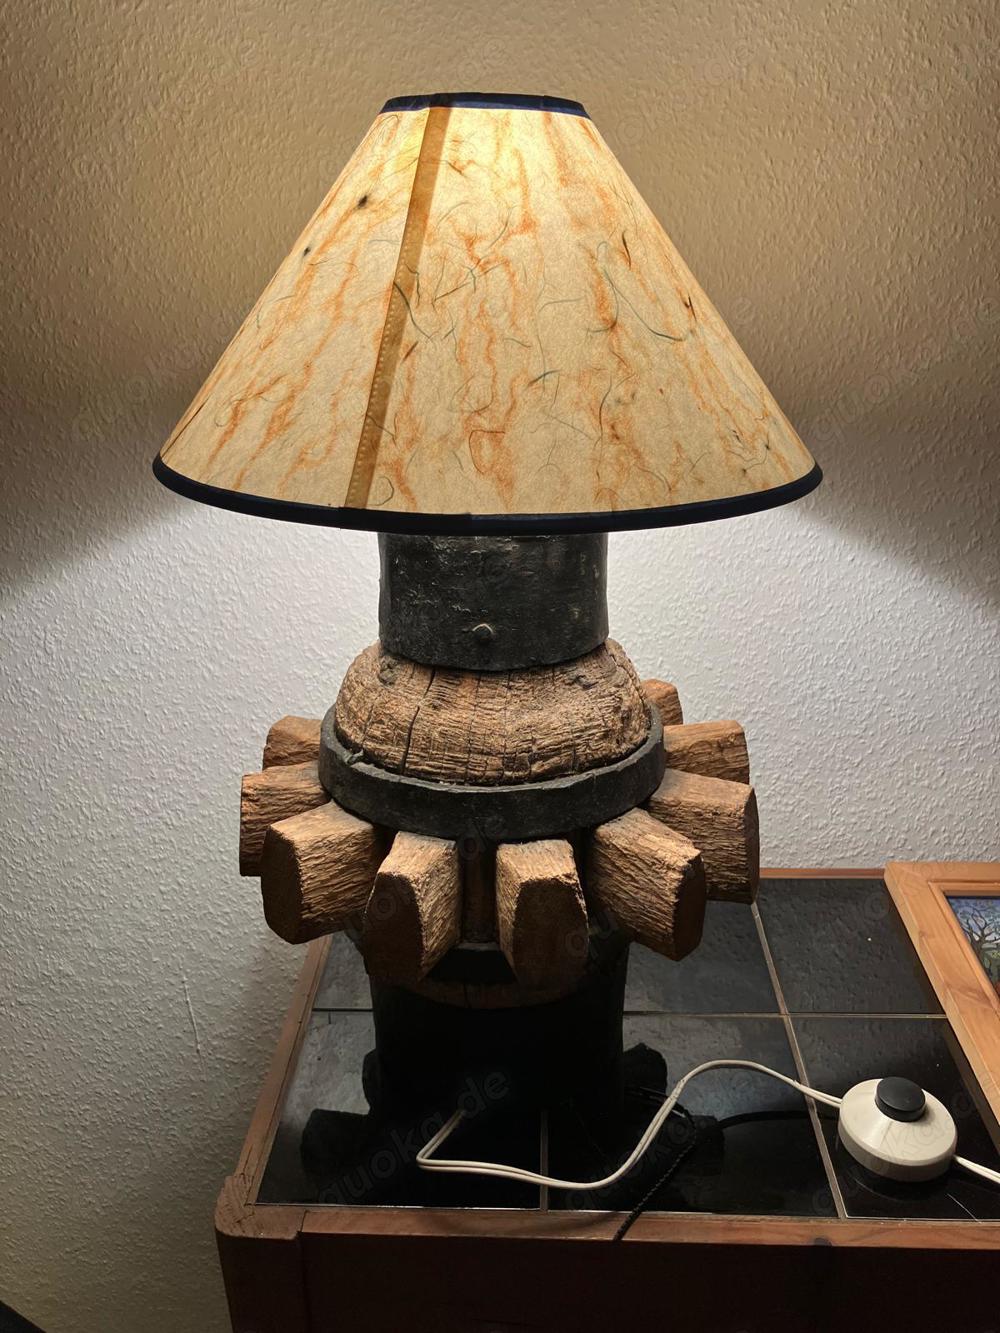 Lampe auf Basis alter Radnabe